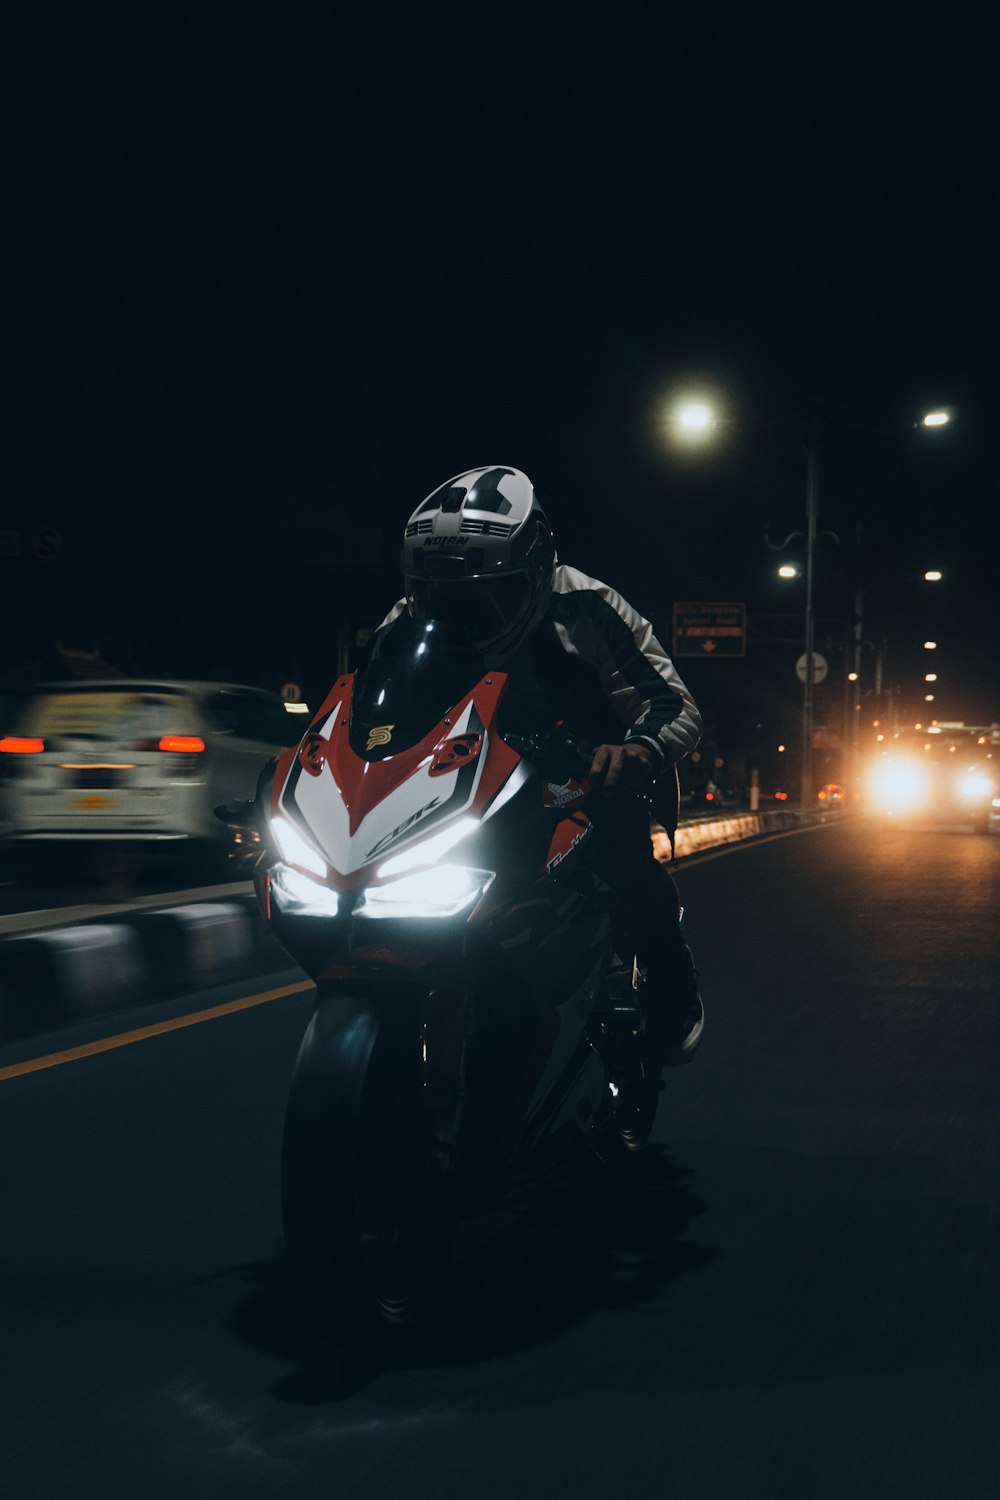 Mann in schwarzer Jacke fährt nachts Motorrad